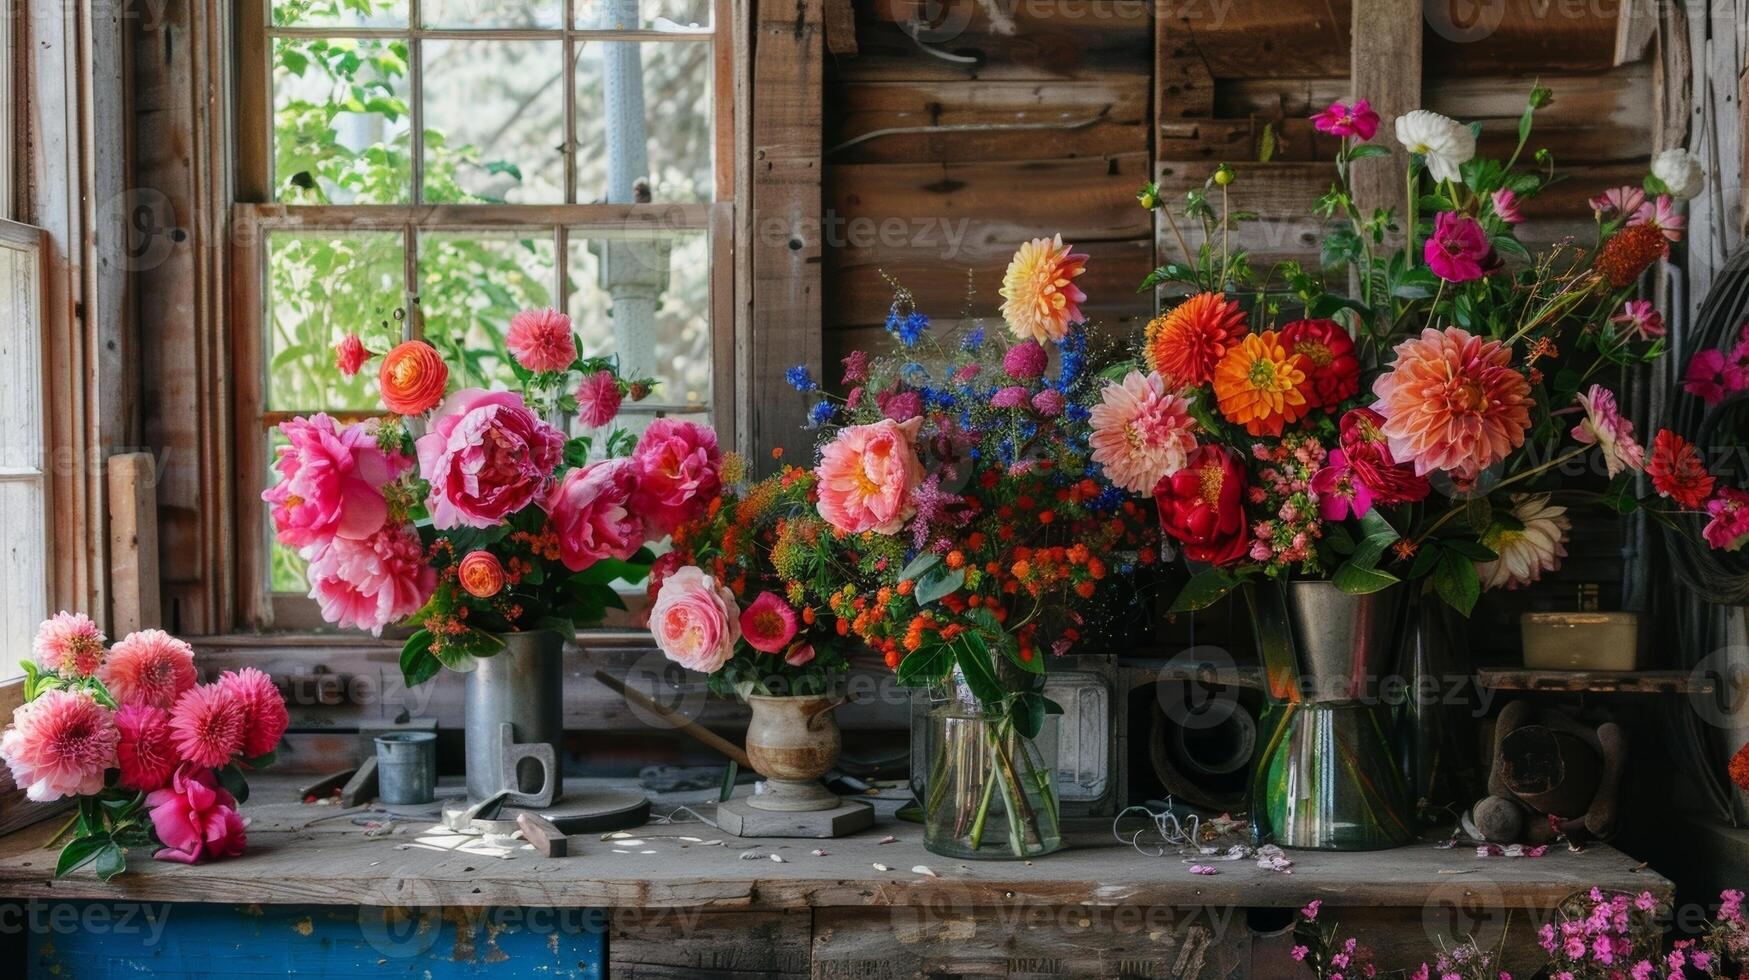 vibrant fleurit de des roses pivoines et dahlias apporter une éclater de Couleur à le atelier ajouter une toucher de élégance à le rustique alentours. 2d plat dessin animé photo